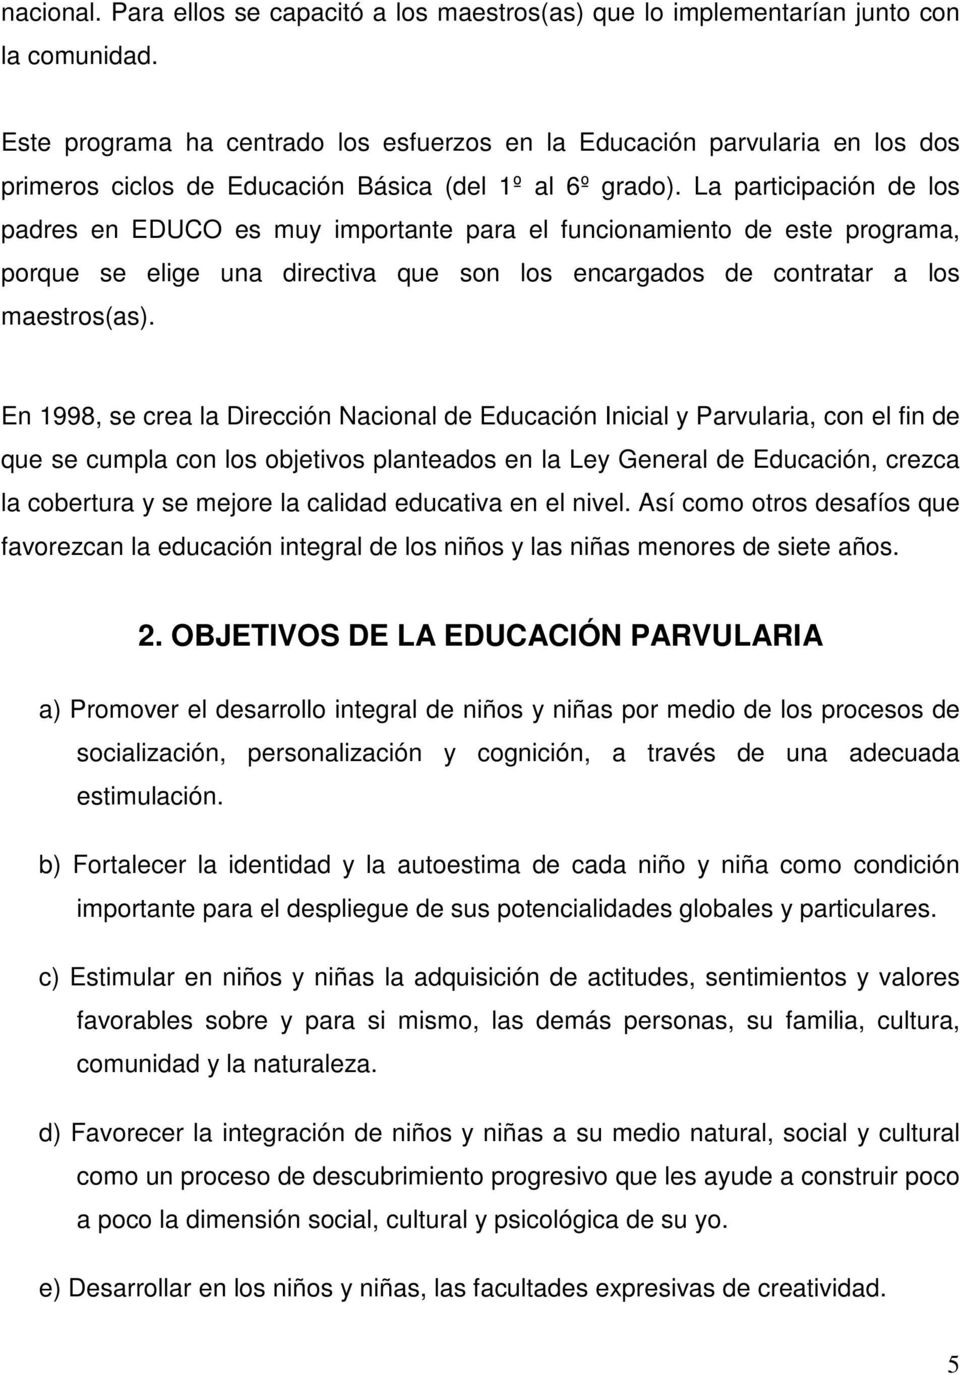 La participación de los padres en EDUCO es muy importante para el funcionamiento de este programa, porque se elige una directiva que son los encargados de contratar a los maestros(as).